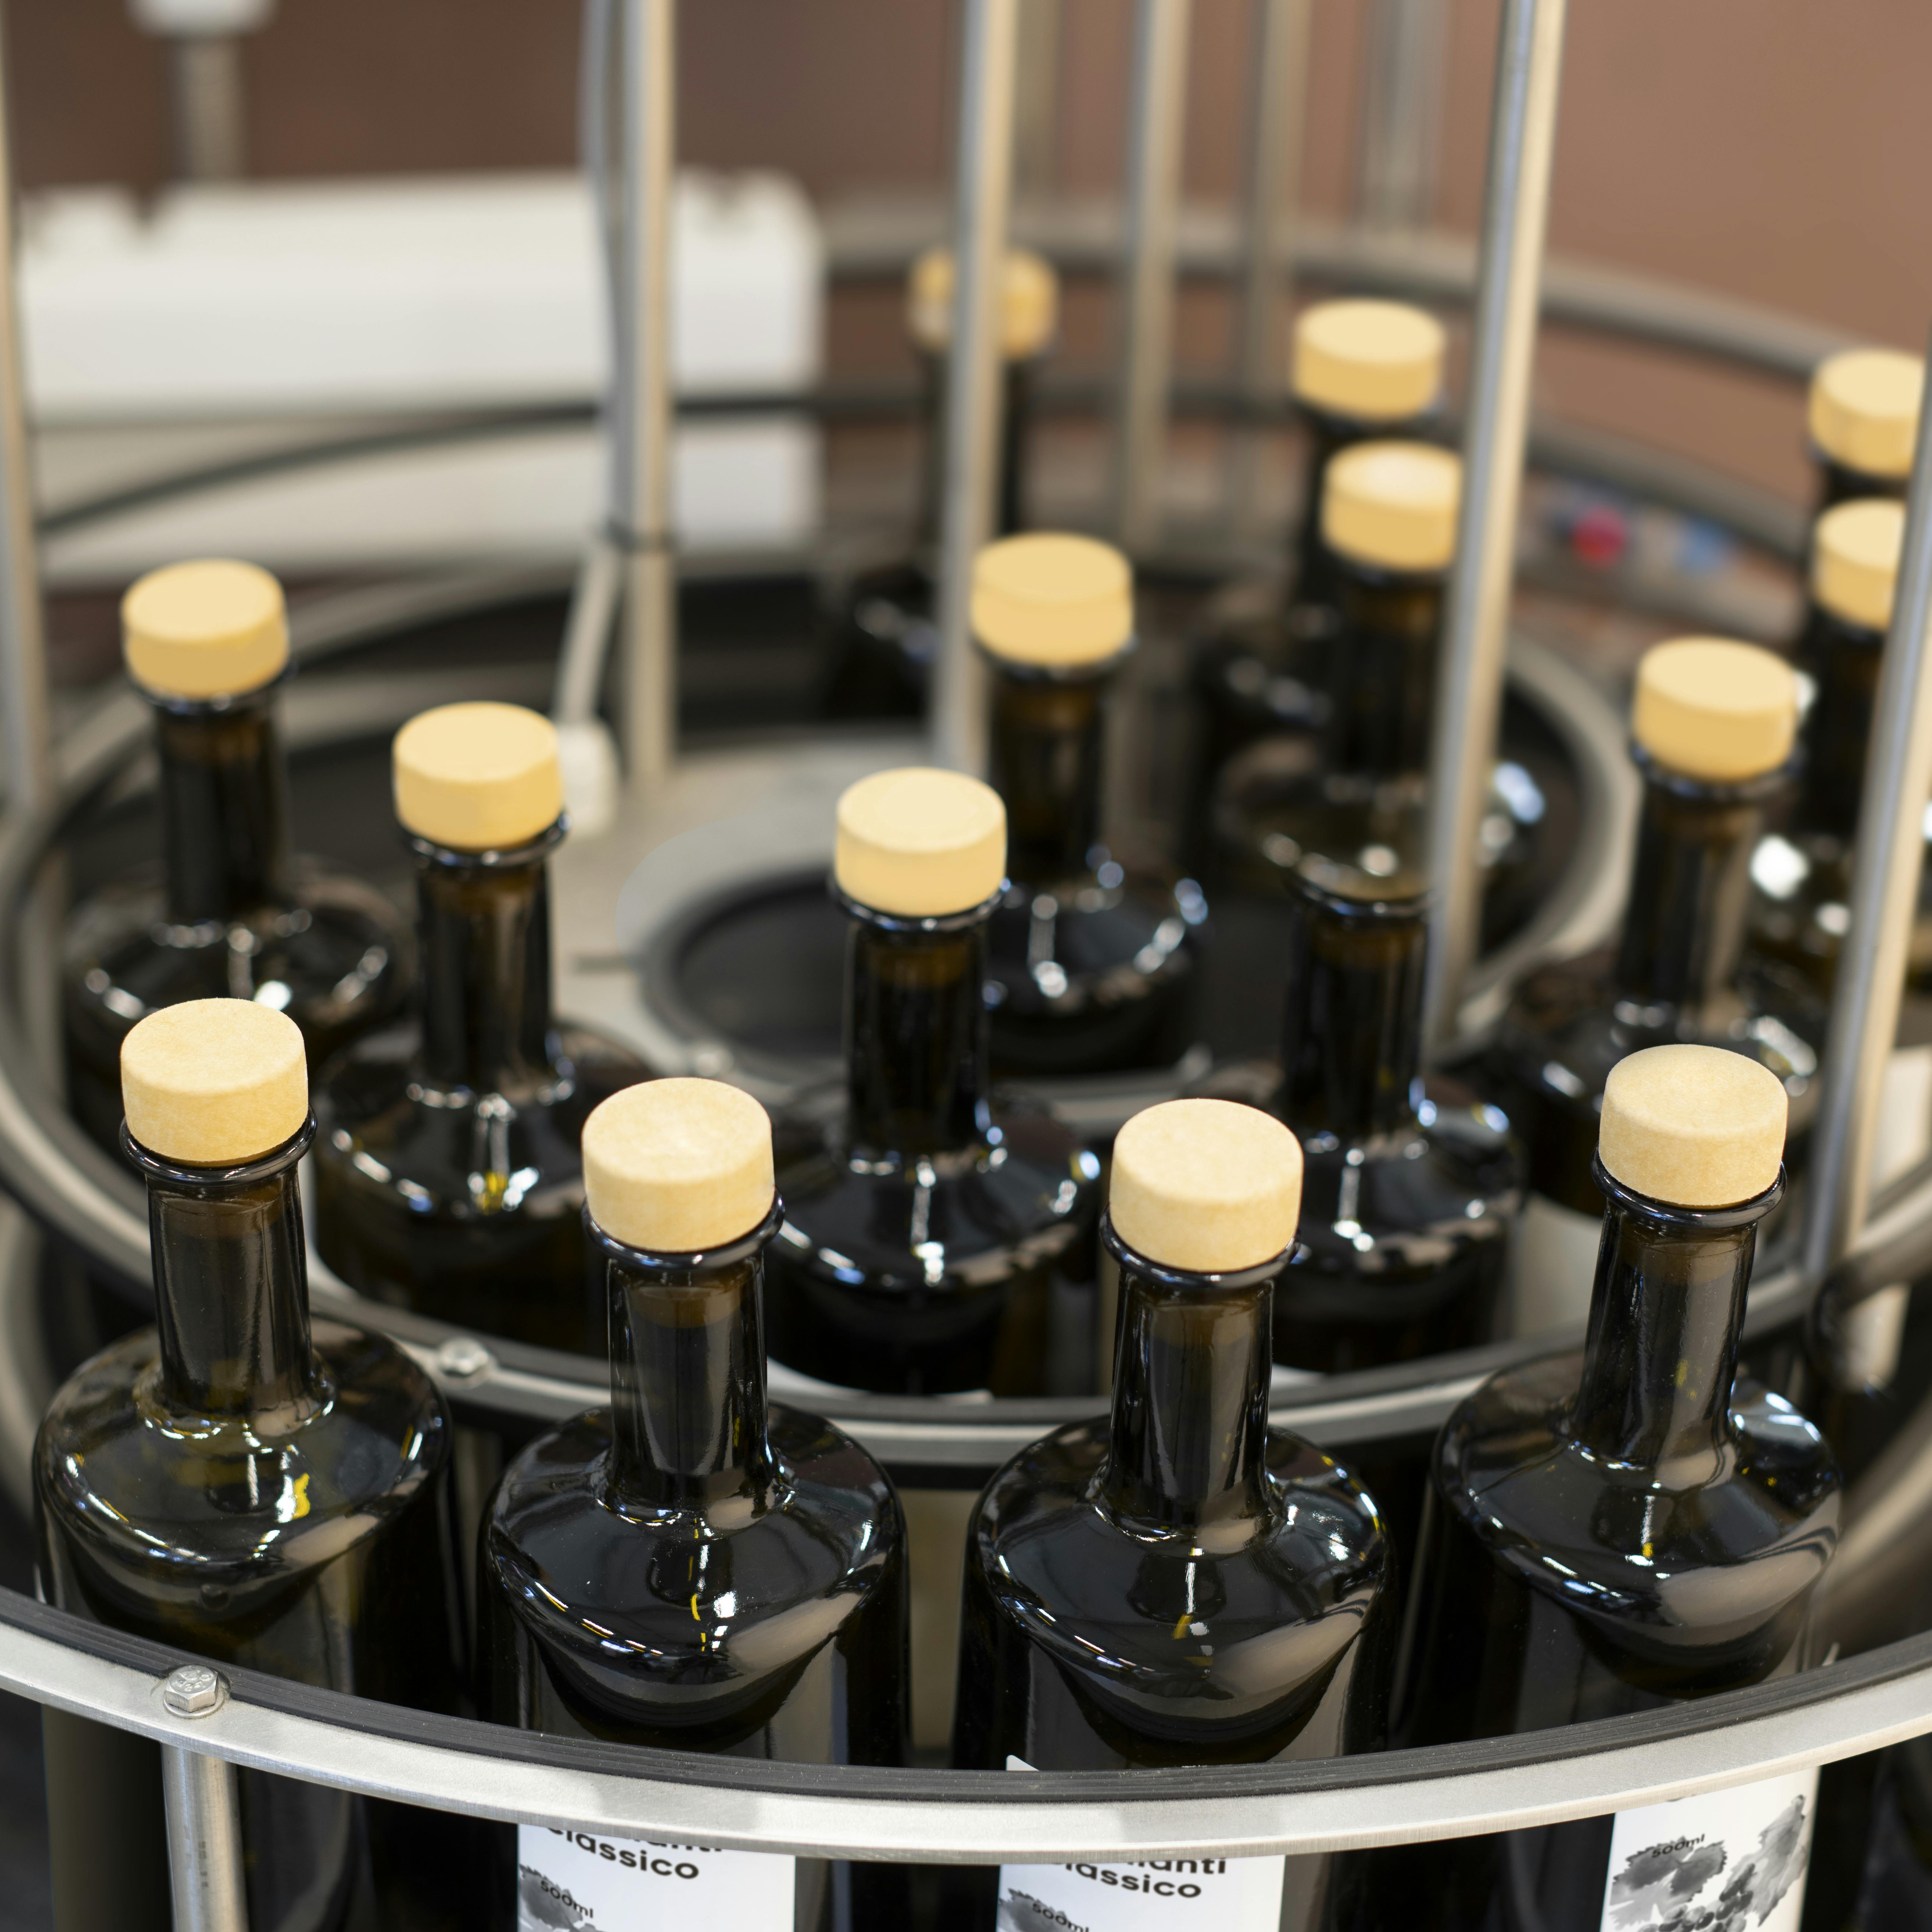 Una tavola indicata per l'accumulo di bottiglie, in questo caso vi sono collocate delle bottiglie adatte per spirits con tappo sughero ed etichetta personalizzata Quinti